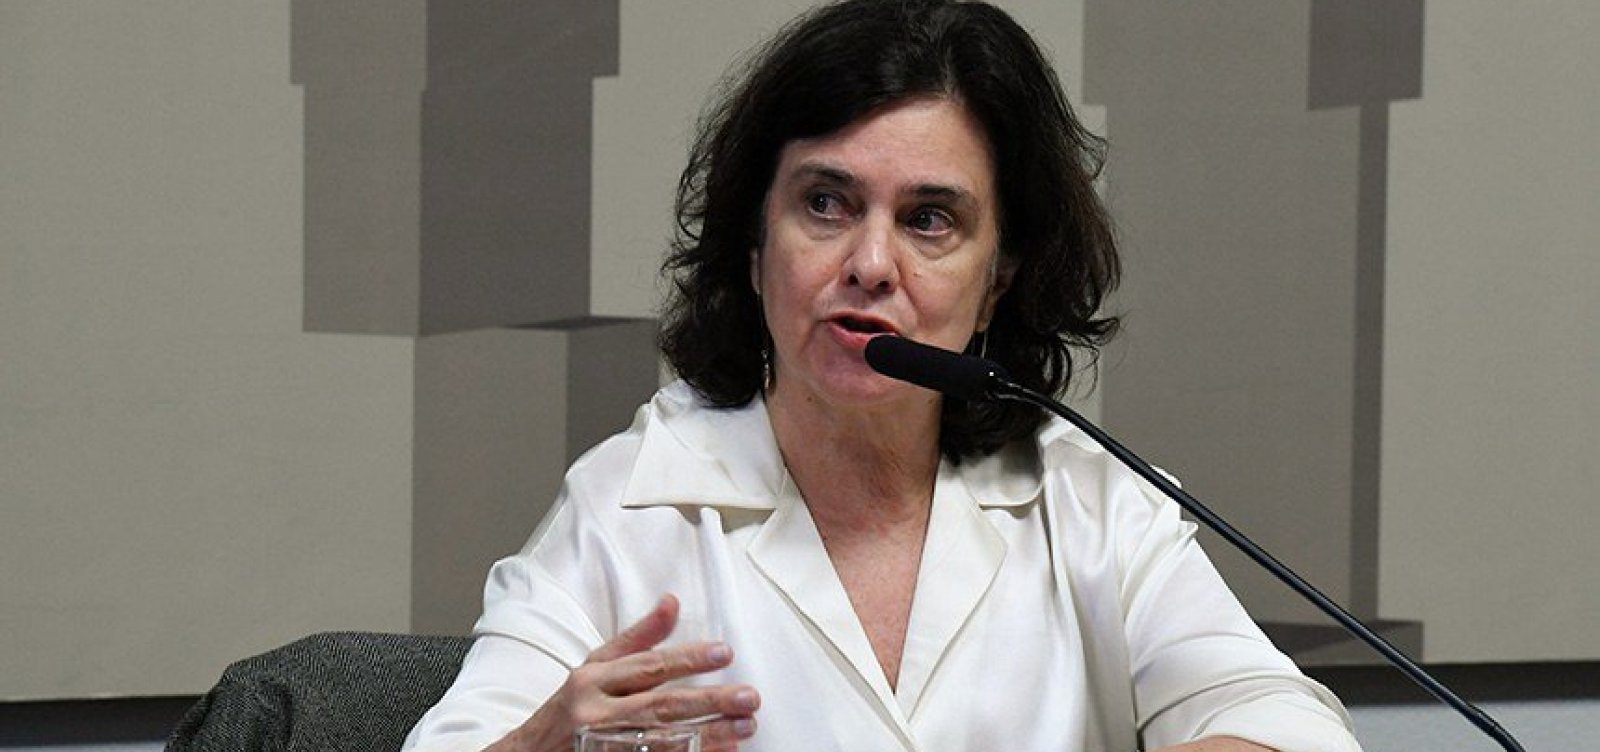 Ministra da Saúde cita "negacionismo" ao justificar baixa adesão à vacina da dengue